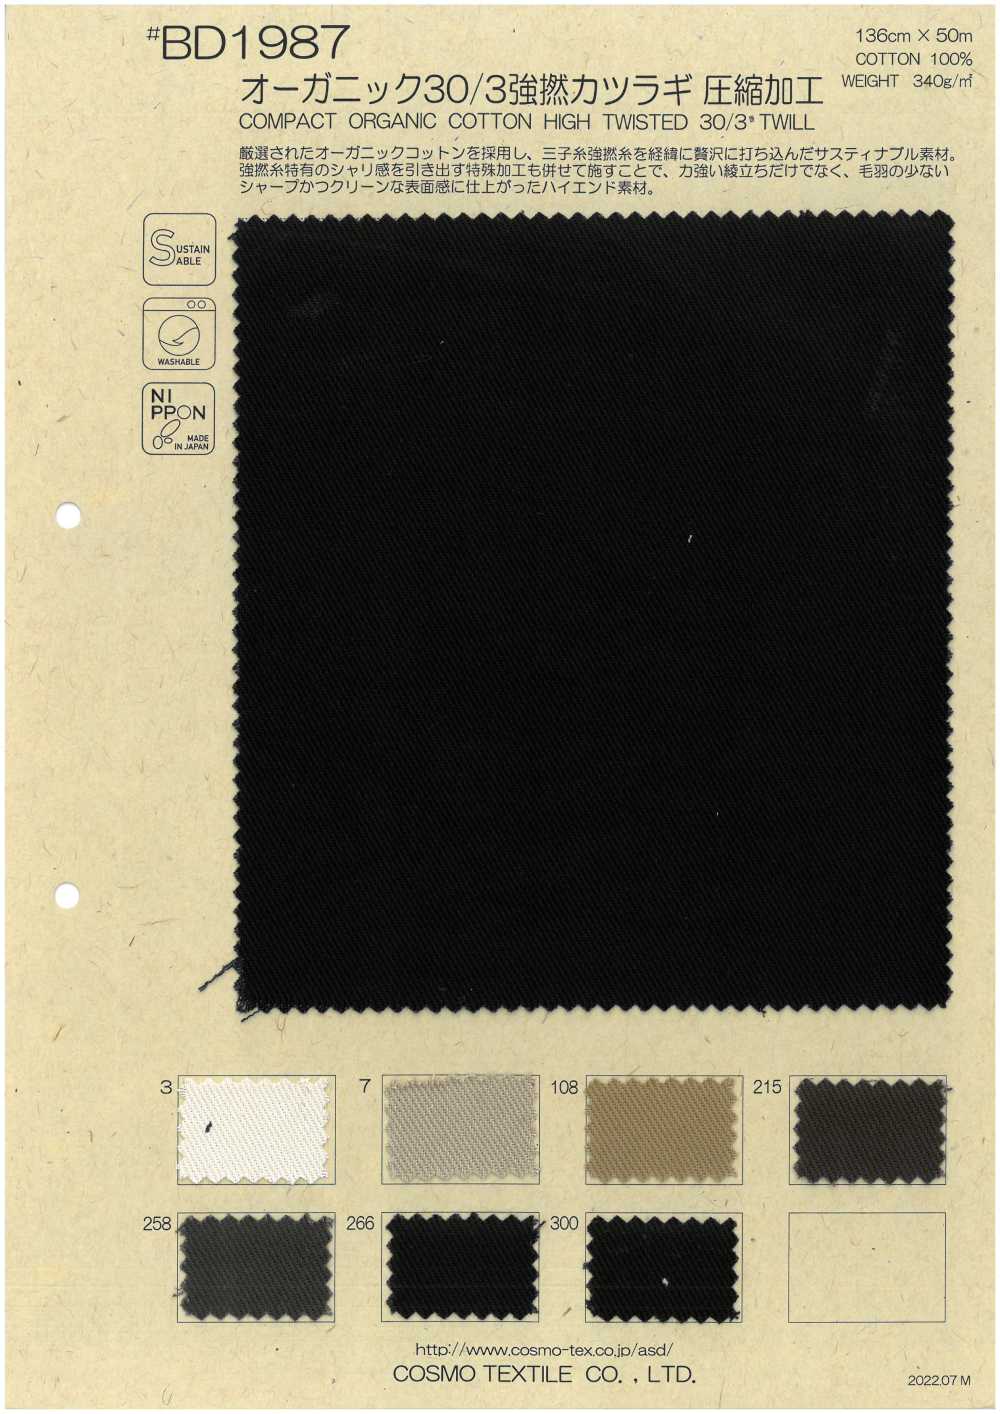 BD1987 Bio-Baumwolle 30/3 Starke Spiralbohrer-Kompressionsverarbeitung[Textilgewebe] COSMO TEXTILE